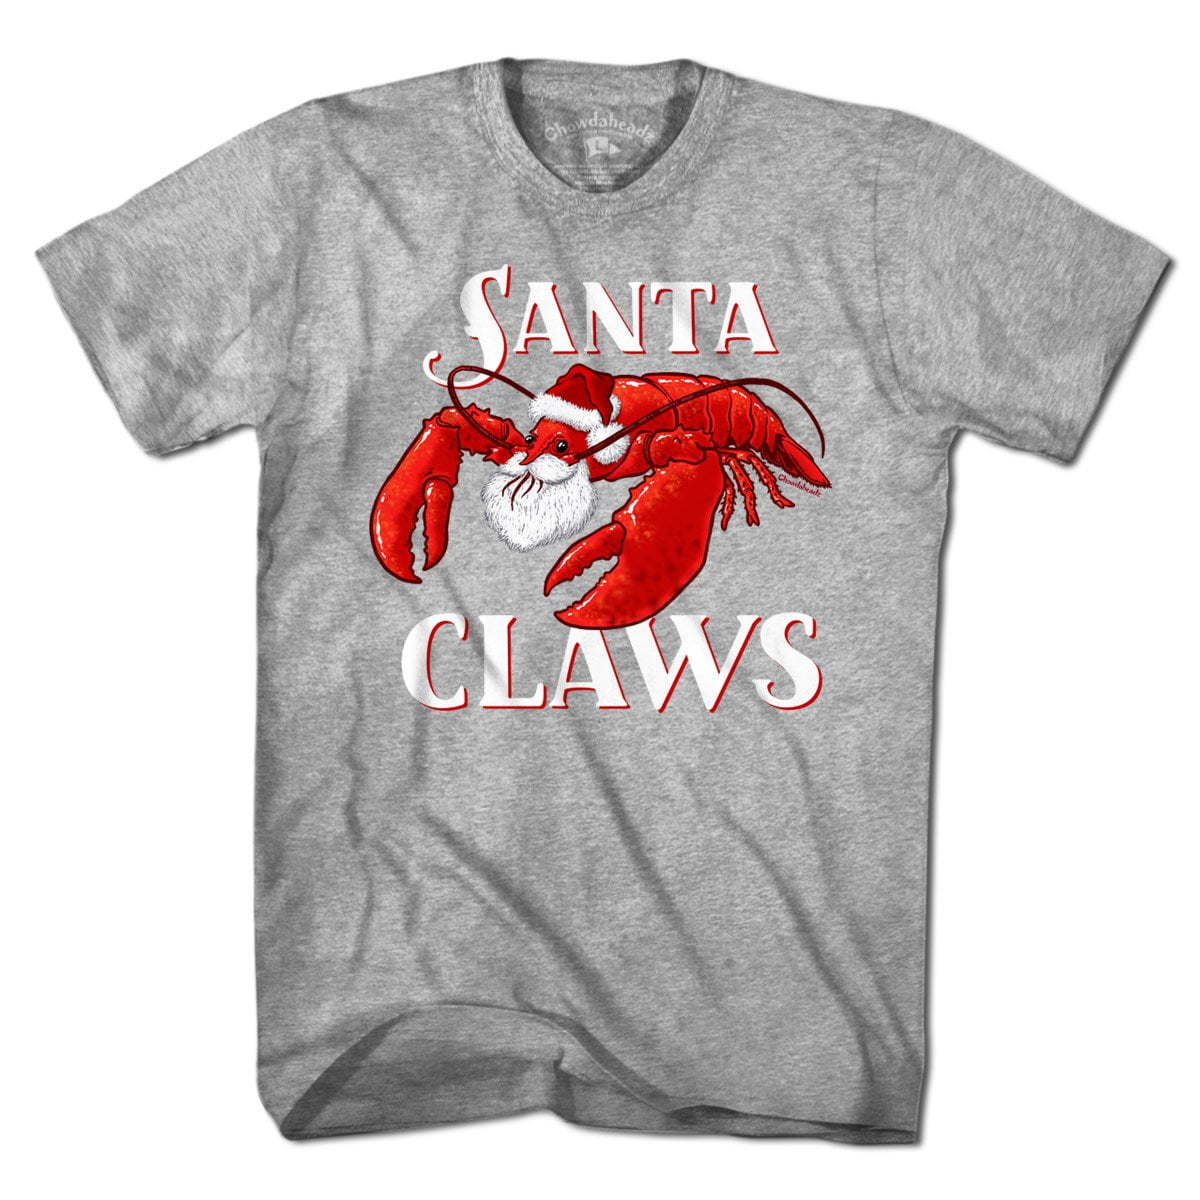 Santa Claws T-Shirt - Chowdaheadz